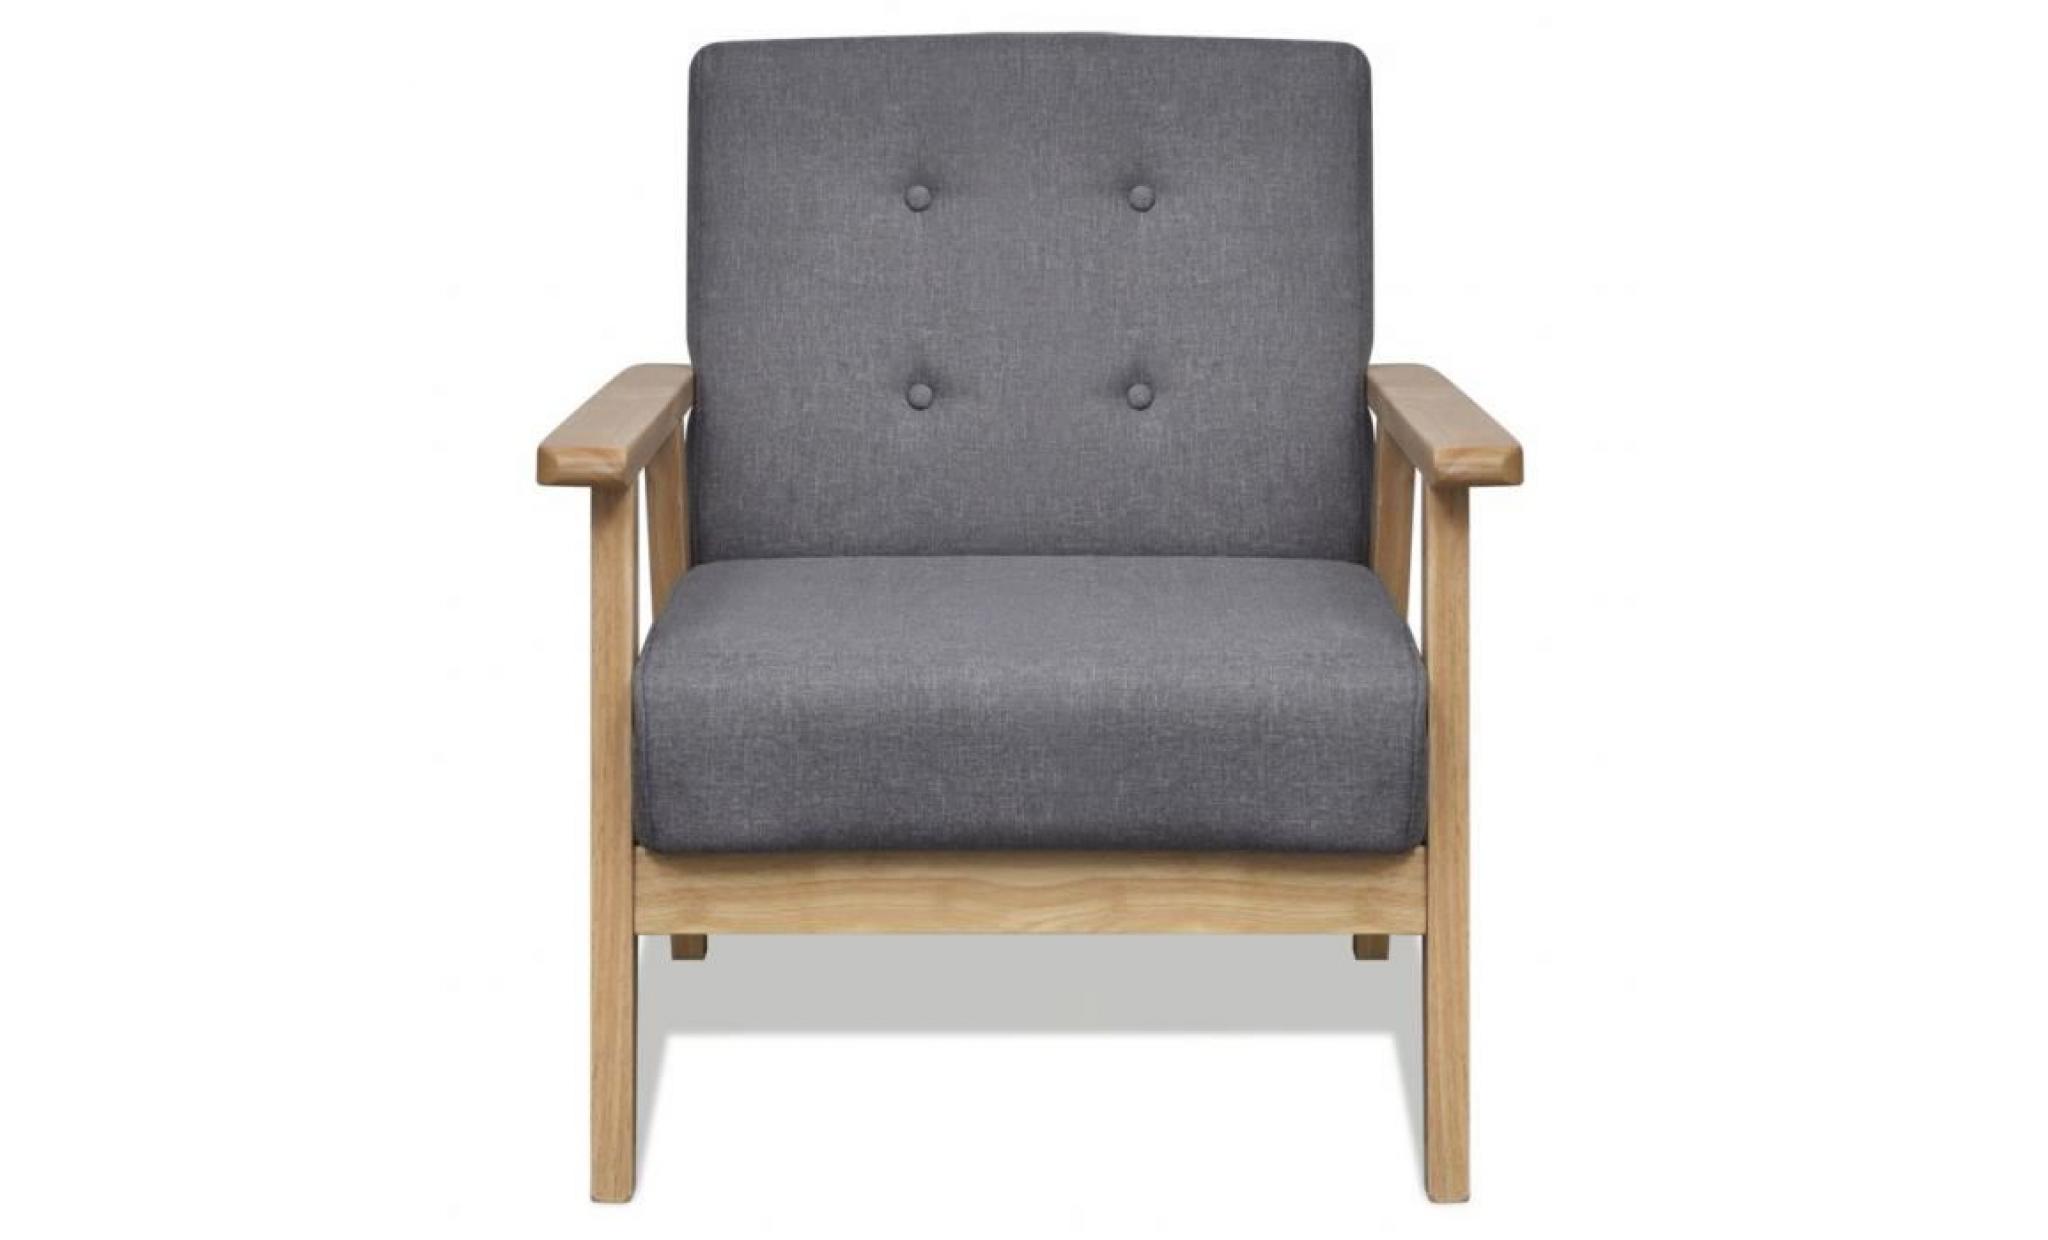 ce fauteuil, avec son design cool et rétro, sera le point de convergence de votre salon ou votre endroit préféré. il est idéal pour pas cher